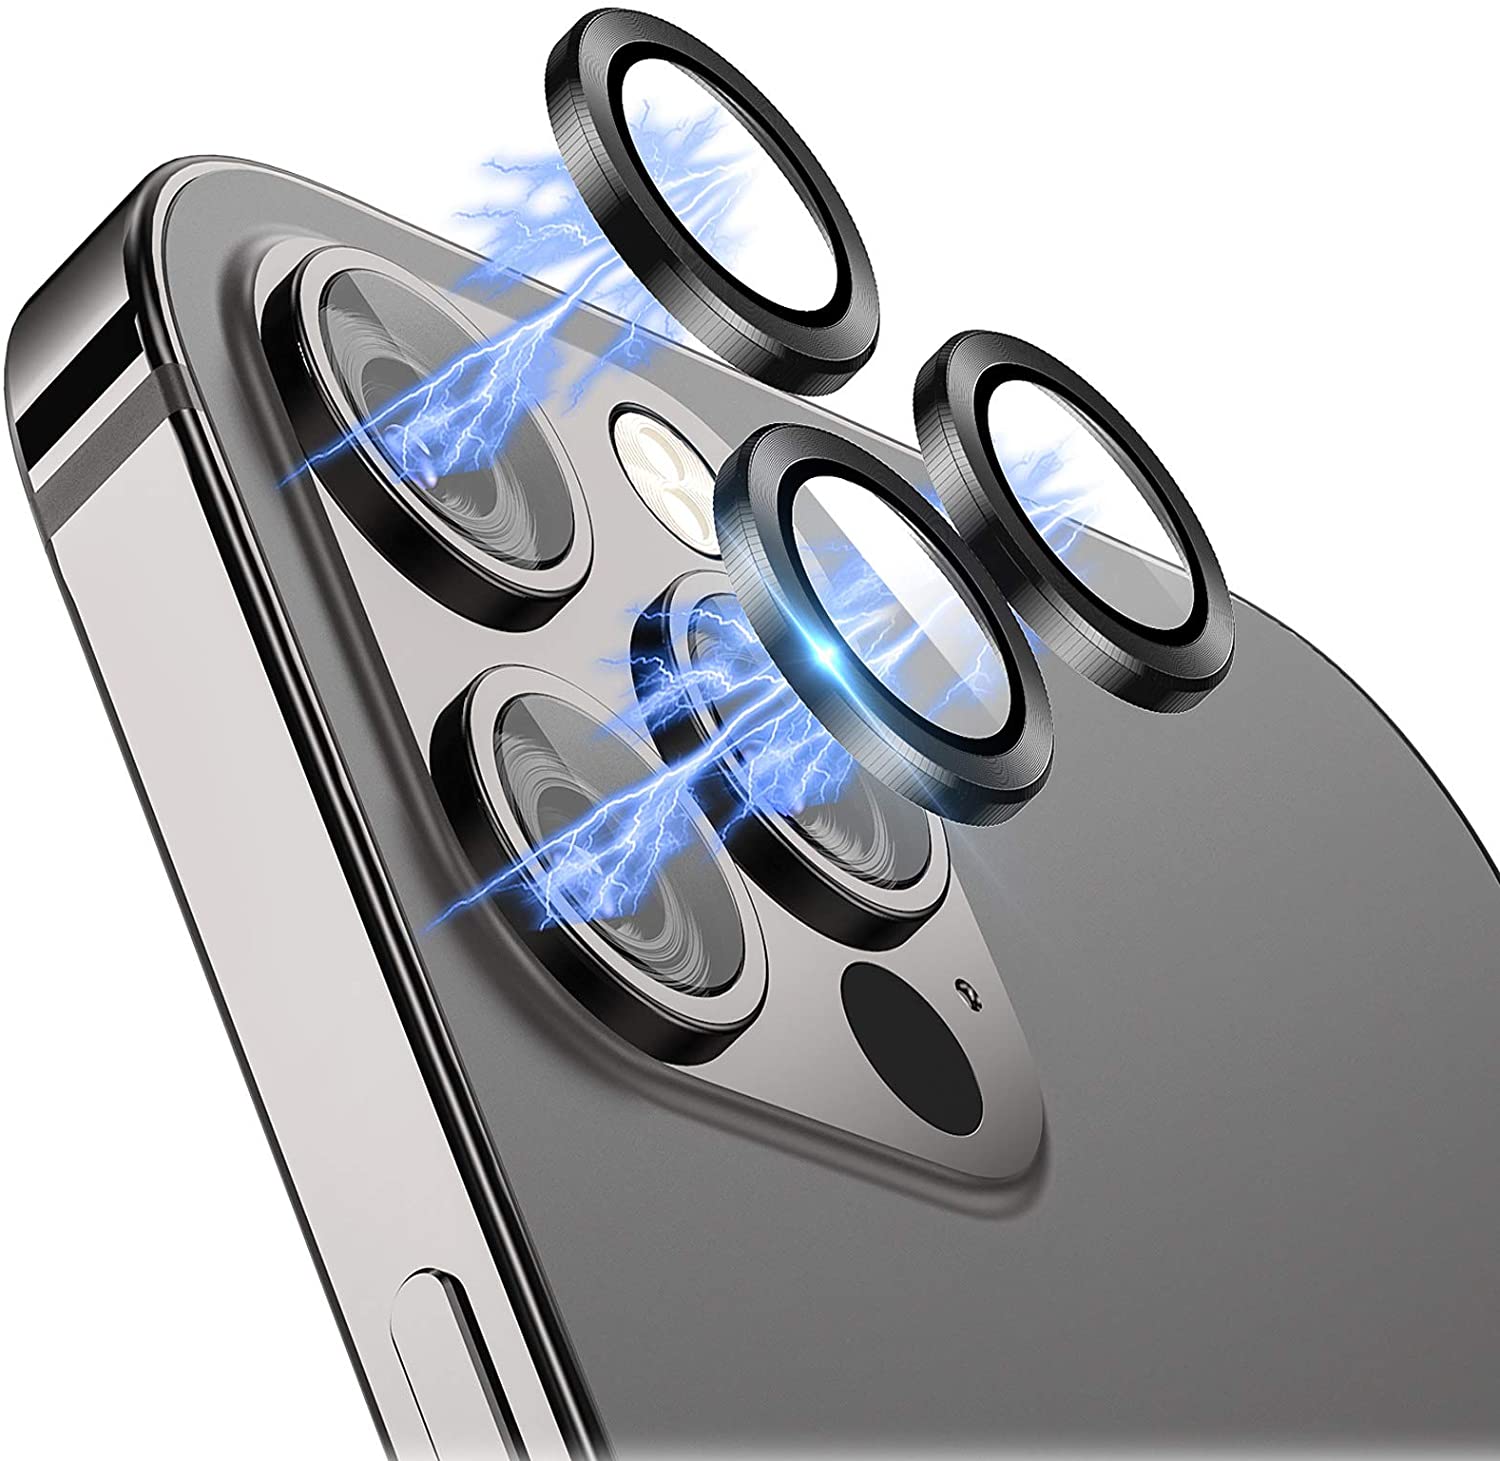 Bộ miếng dán kính cường lực bảo vệ Camera iPhone 12 Pro (6.1 inch) hiệu Wiwu Guard Lens Ring